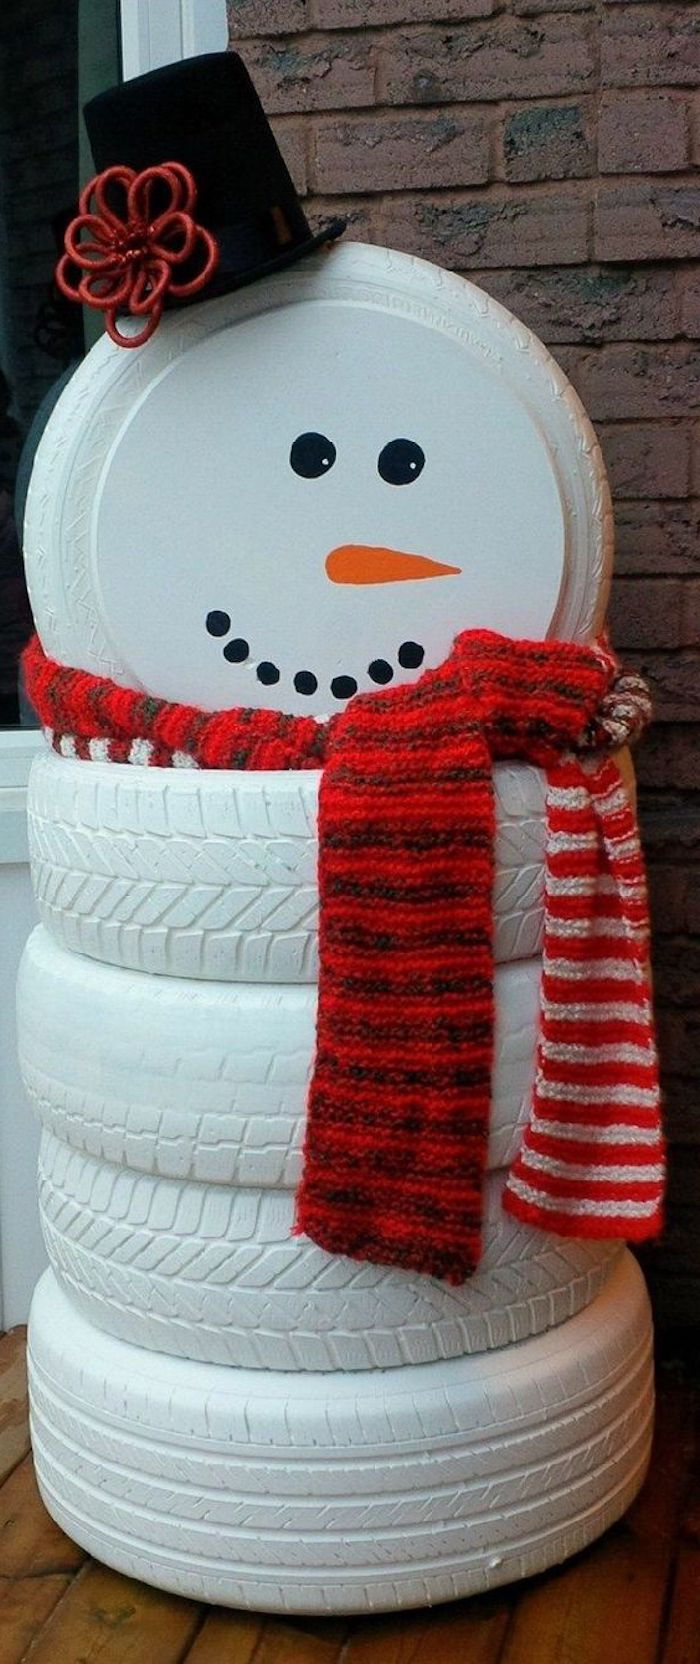 veliki snežak z rdečim šalom, črnim klobukom in pomarančnim nosom - snežaka iz belega pnevmatike